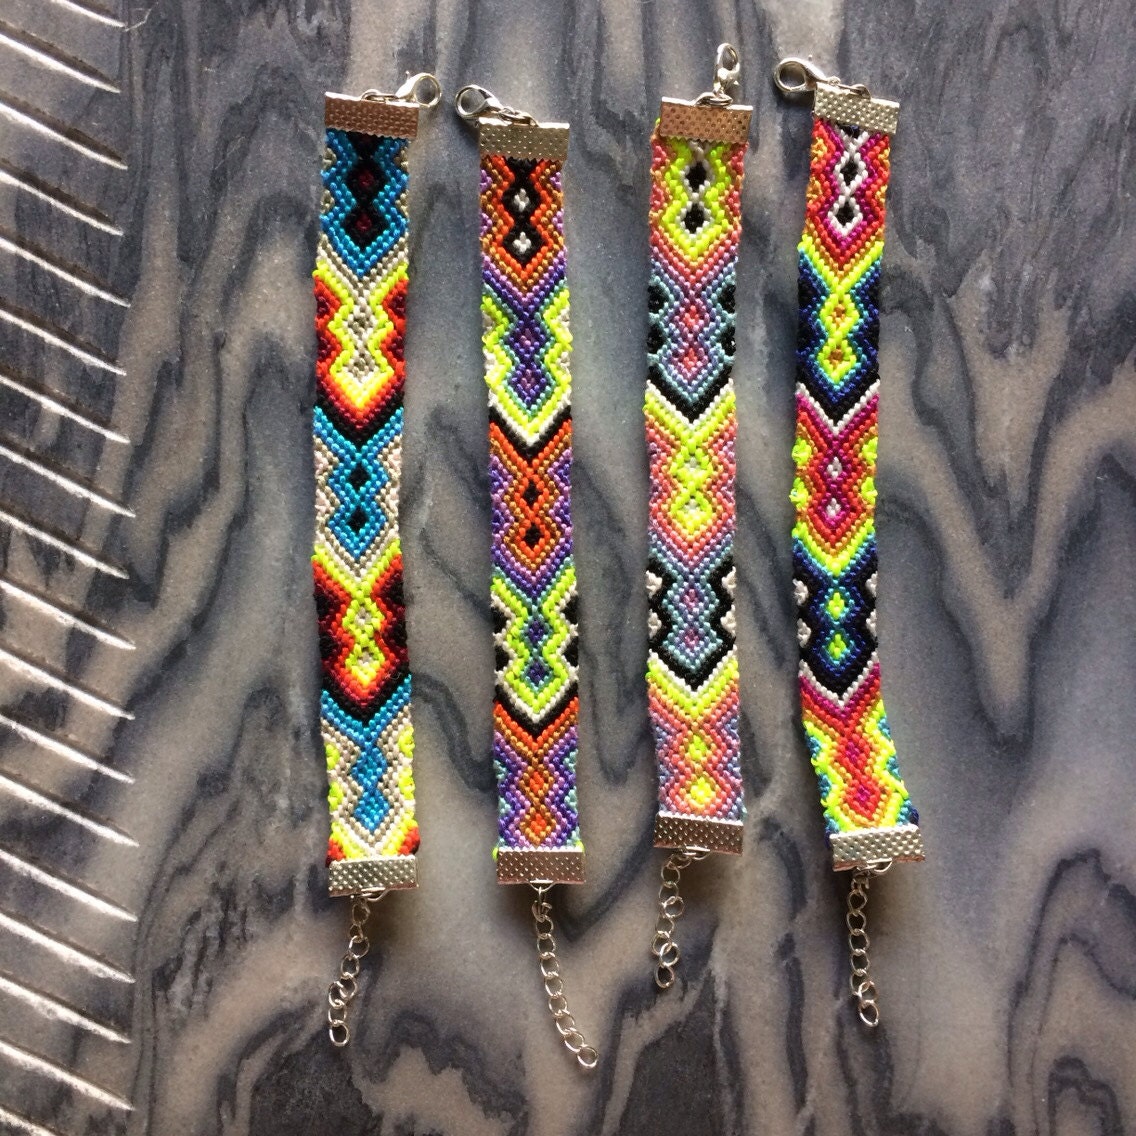 Neon Tribal Friendship Bracelets with Clasps by MichikoJewelry